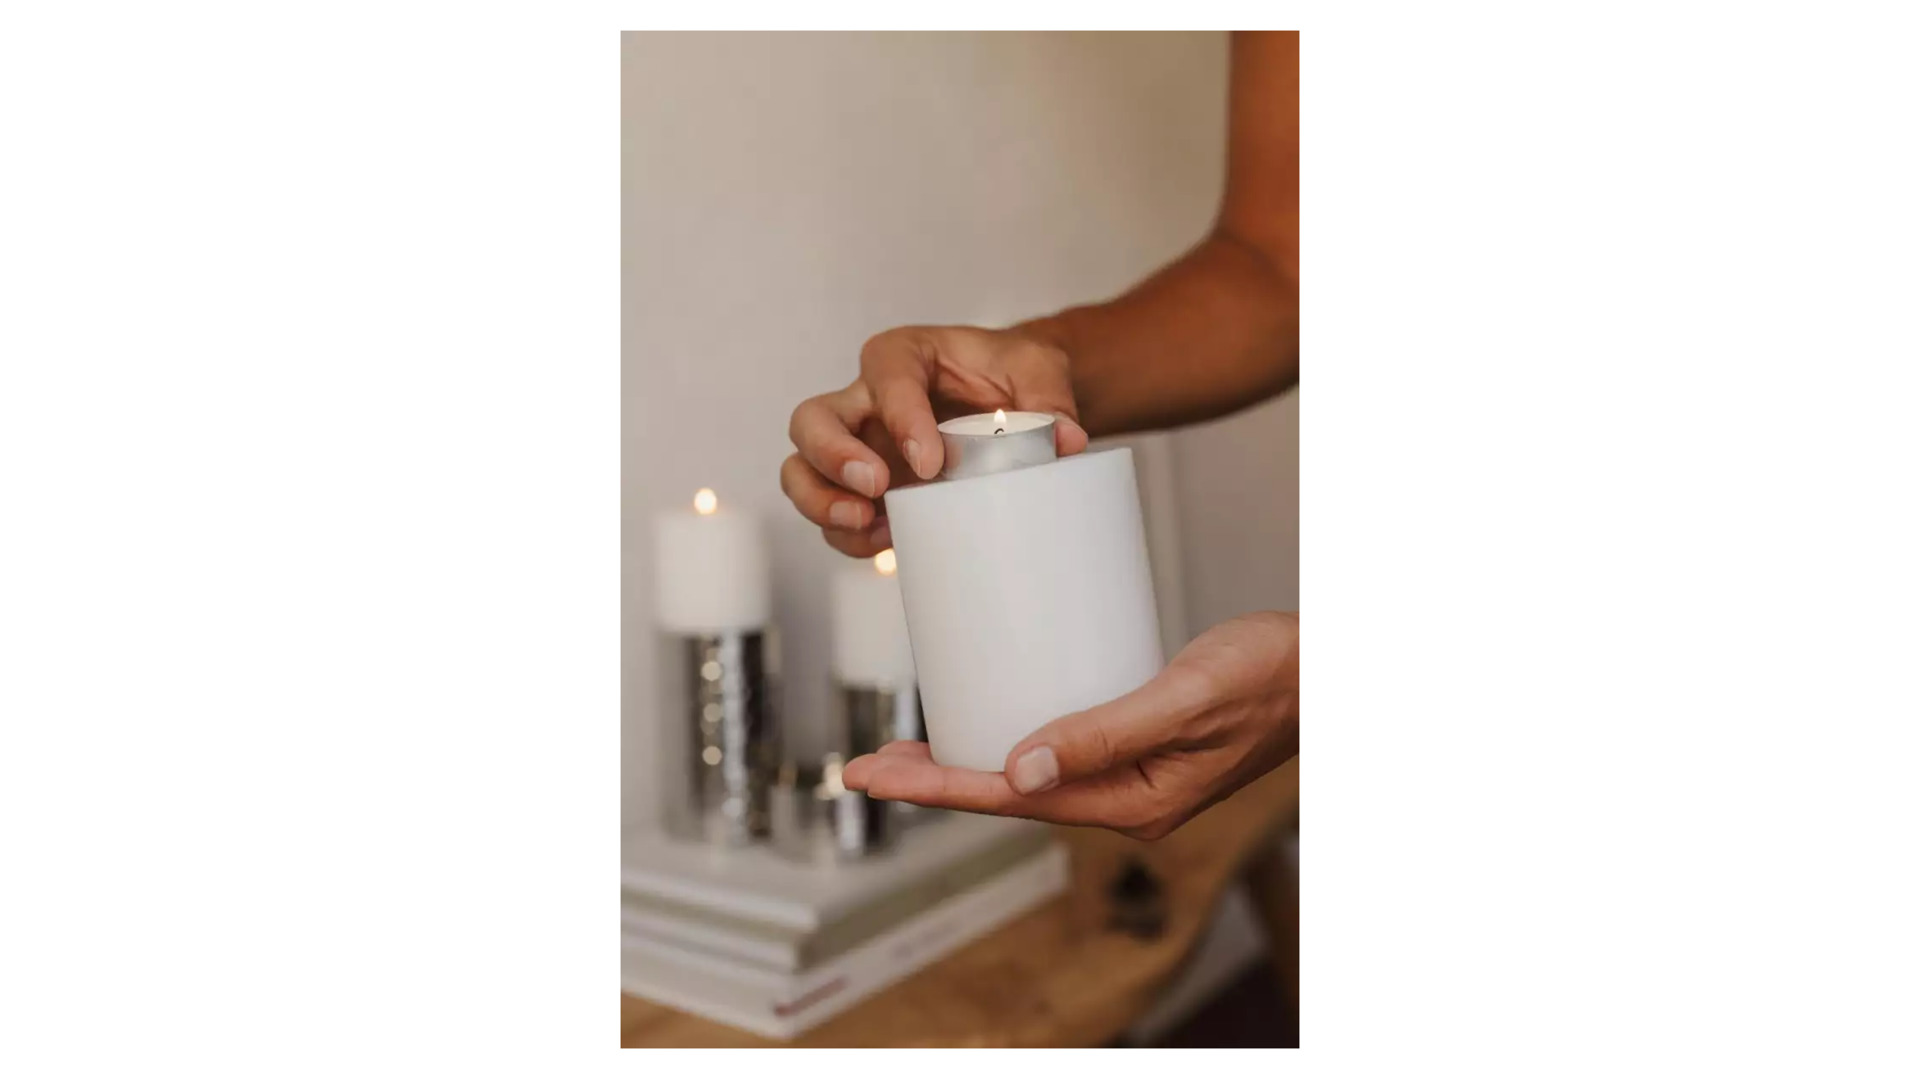 Подставка для чайной свечи Edzard Корнелиус Н15хД10 см, жаростойкий пластик, белая